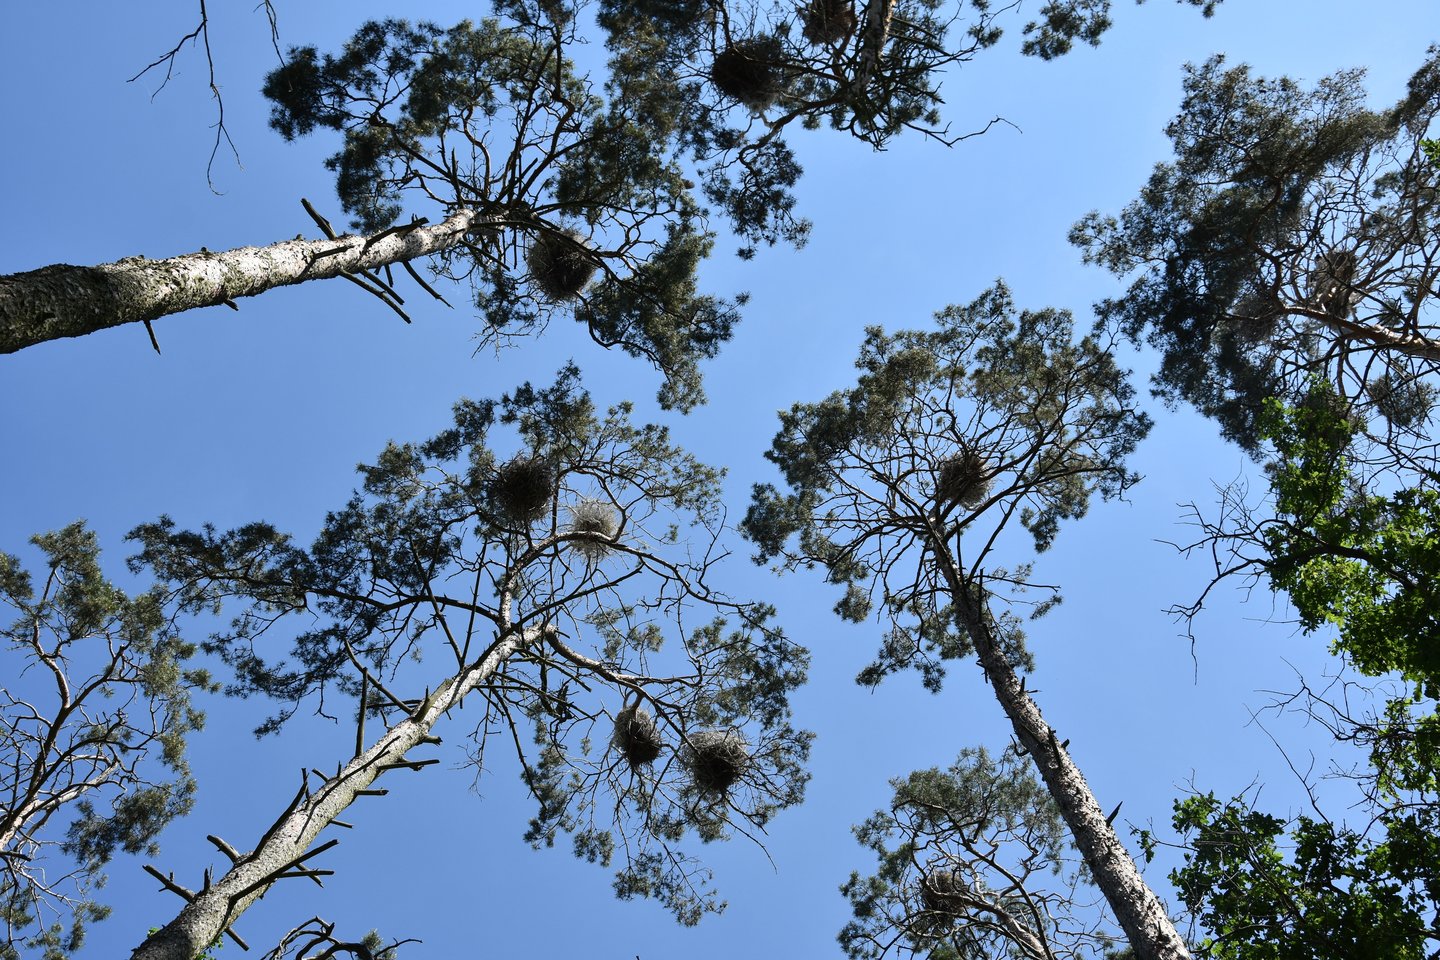  Viename medyje neretai lizdus susikrauna ir kormoranai, ir garniai.  <br> A.Srėbalienės nuotr.